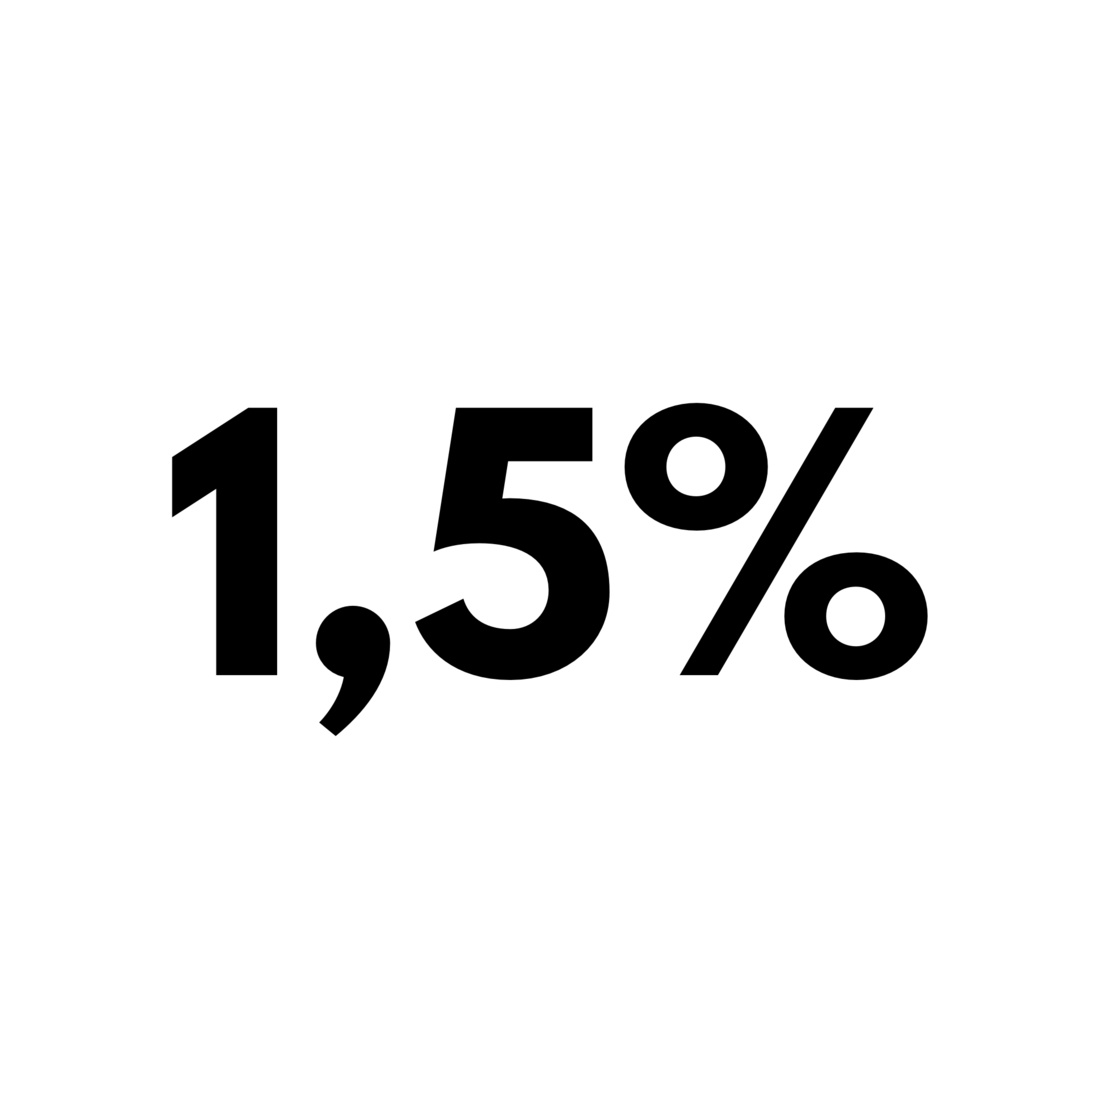 Le taux d'intérêt de référence applicable aux contrats de bail reste à 1,5 %